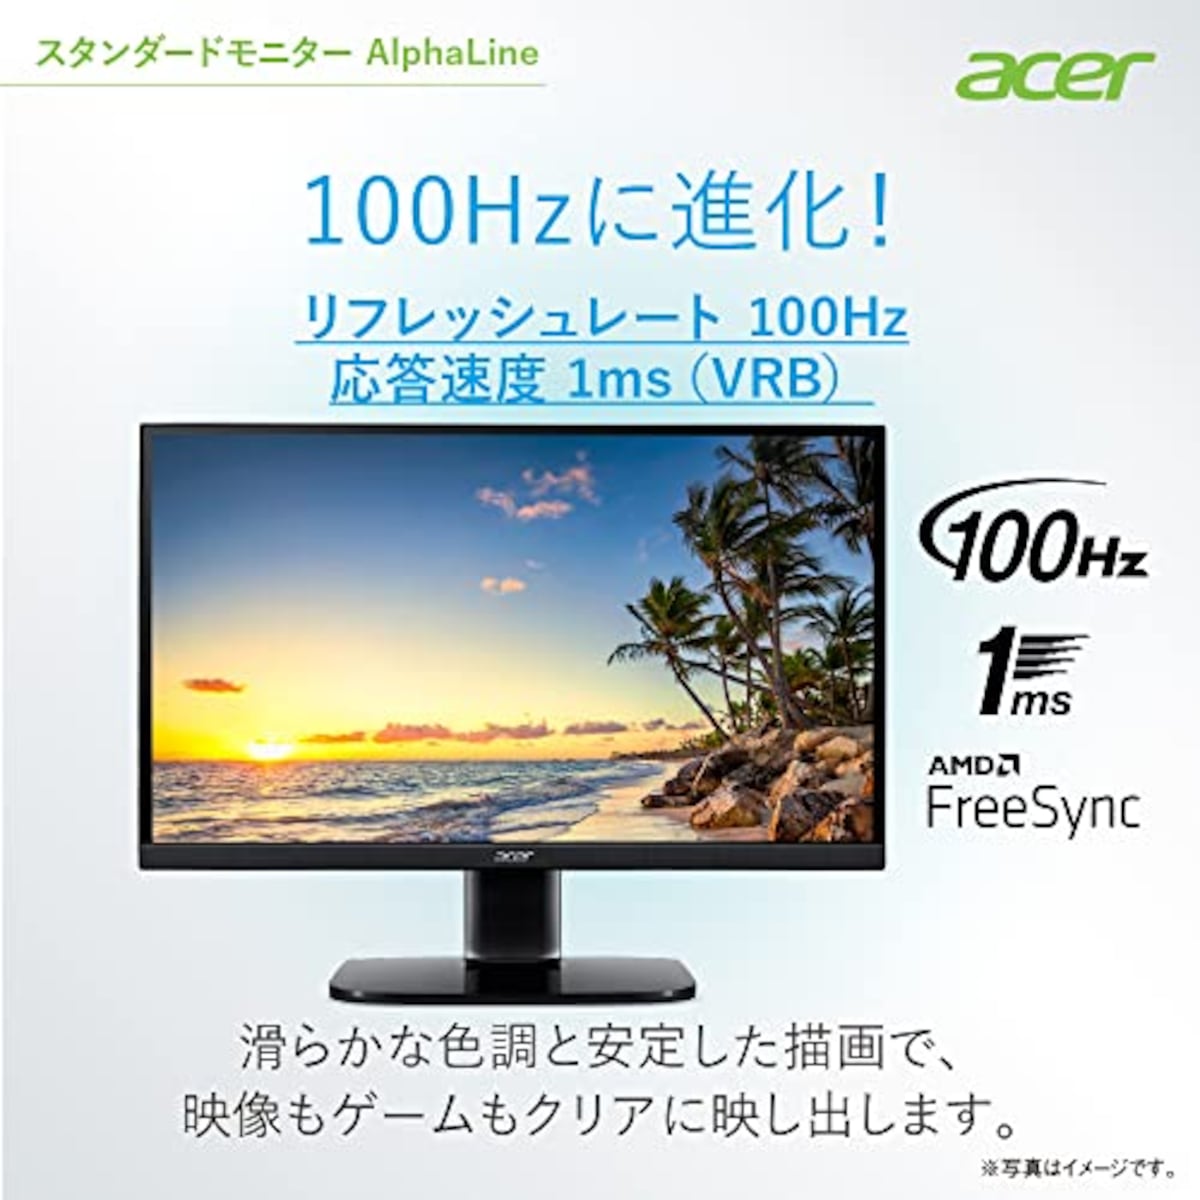  日本エイサー 【Amazon.co.jp限定】Acer モニター 27インチ フルHD VA 非光沢100Hz 1ms HDMI ミニD-Sub15 VESAマウント対応 スピーカー内蔵 AMD FreeSync KA272Hbmix画像3 